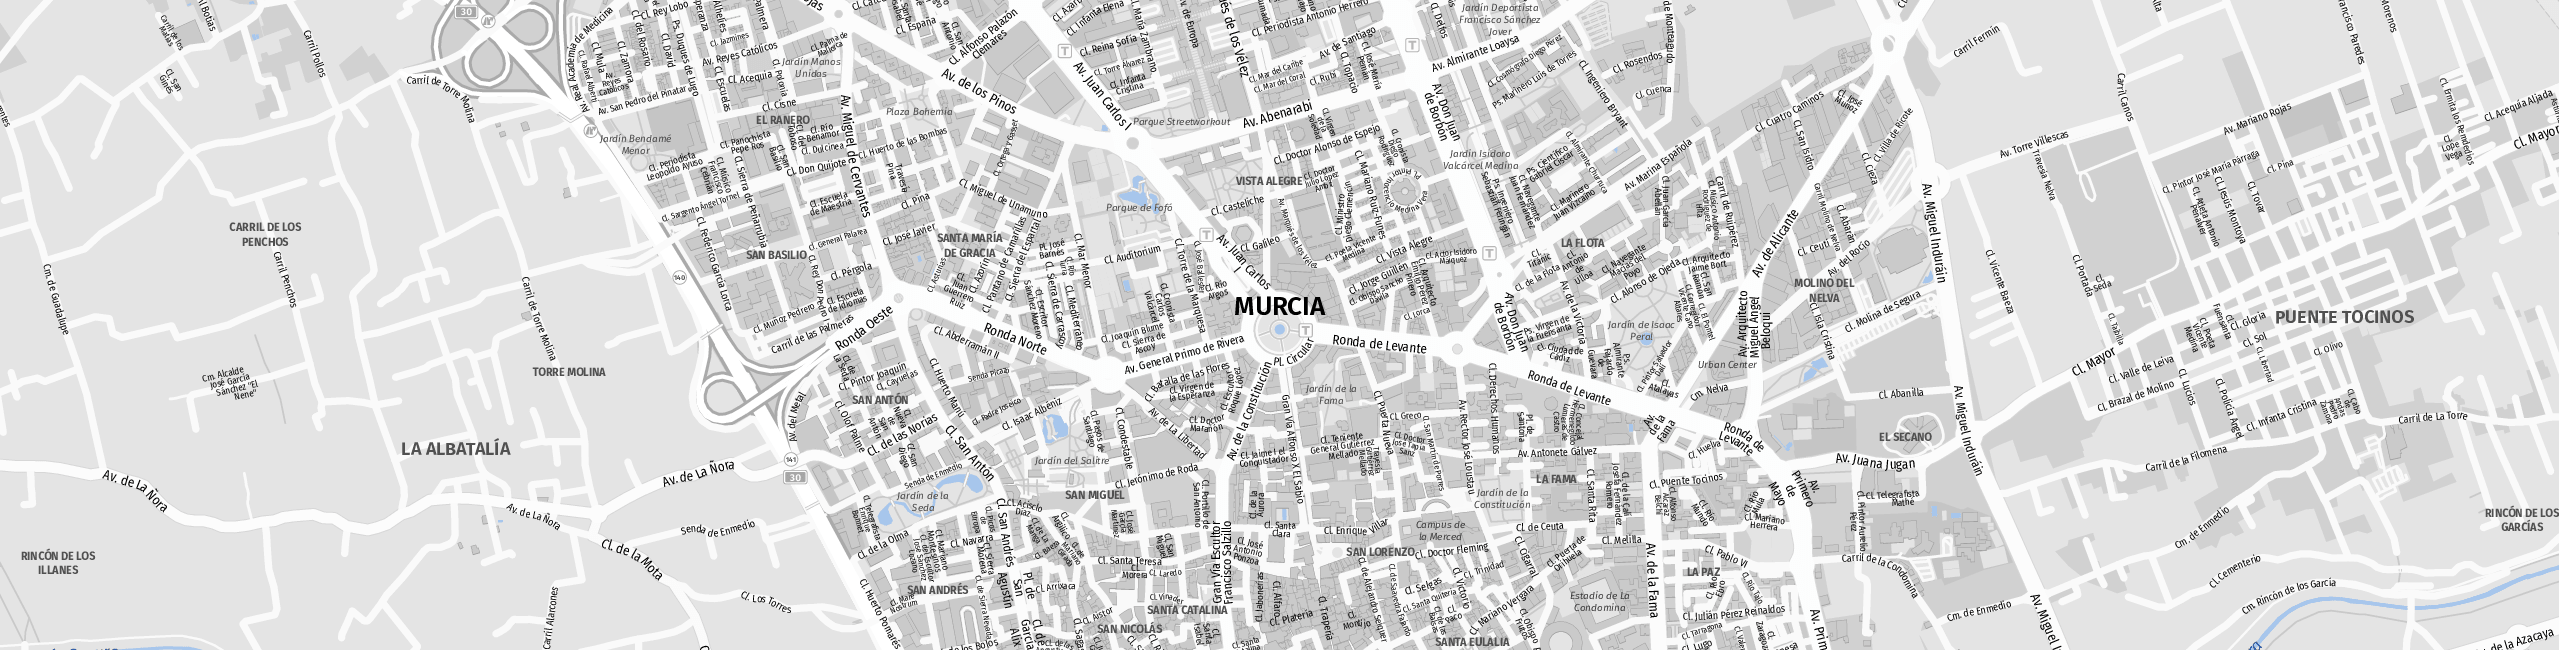 Stadtplan Murcia zum Downloaden.